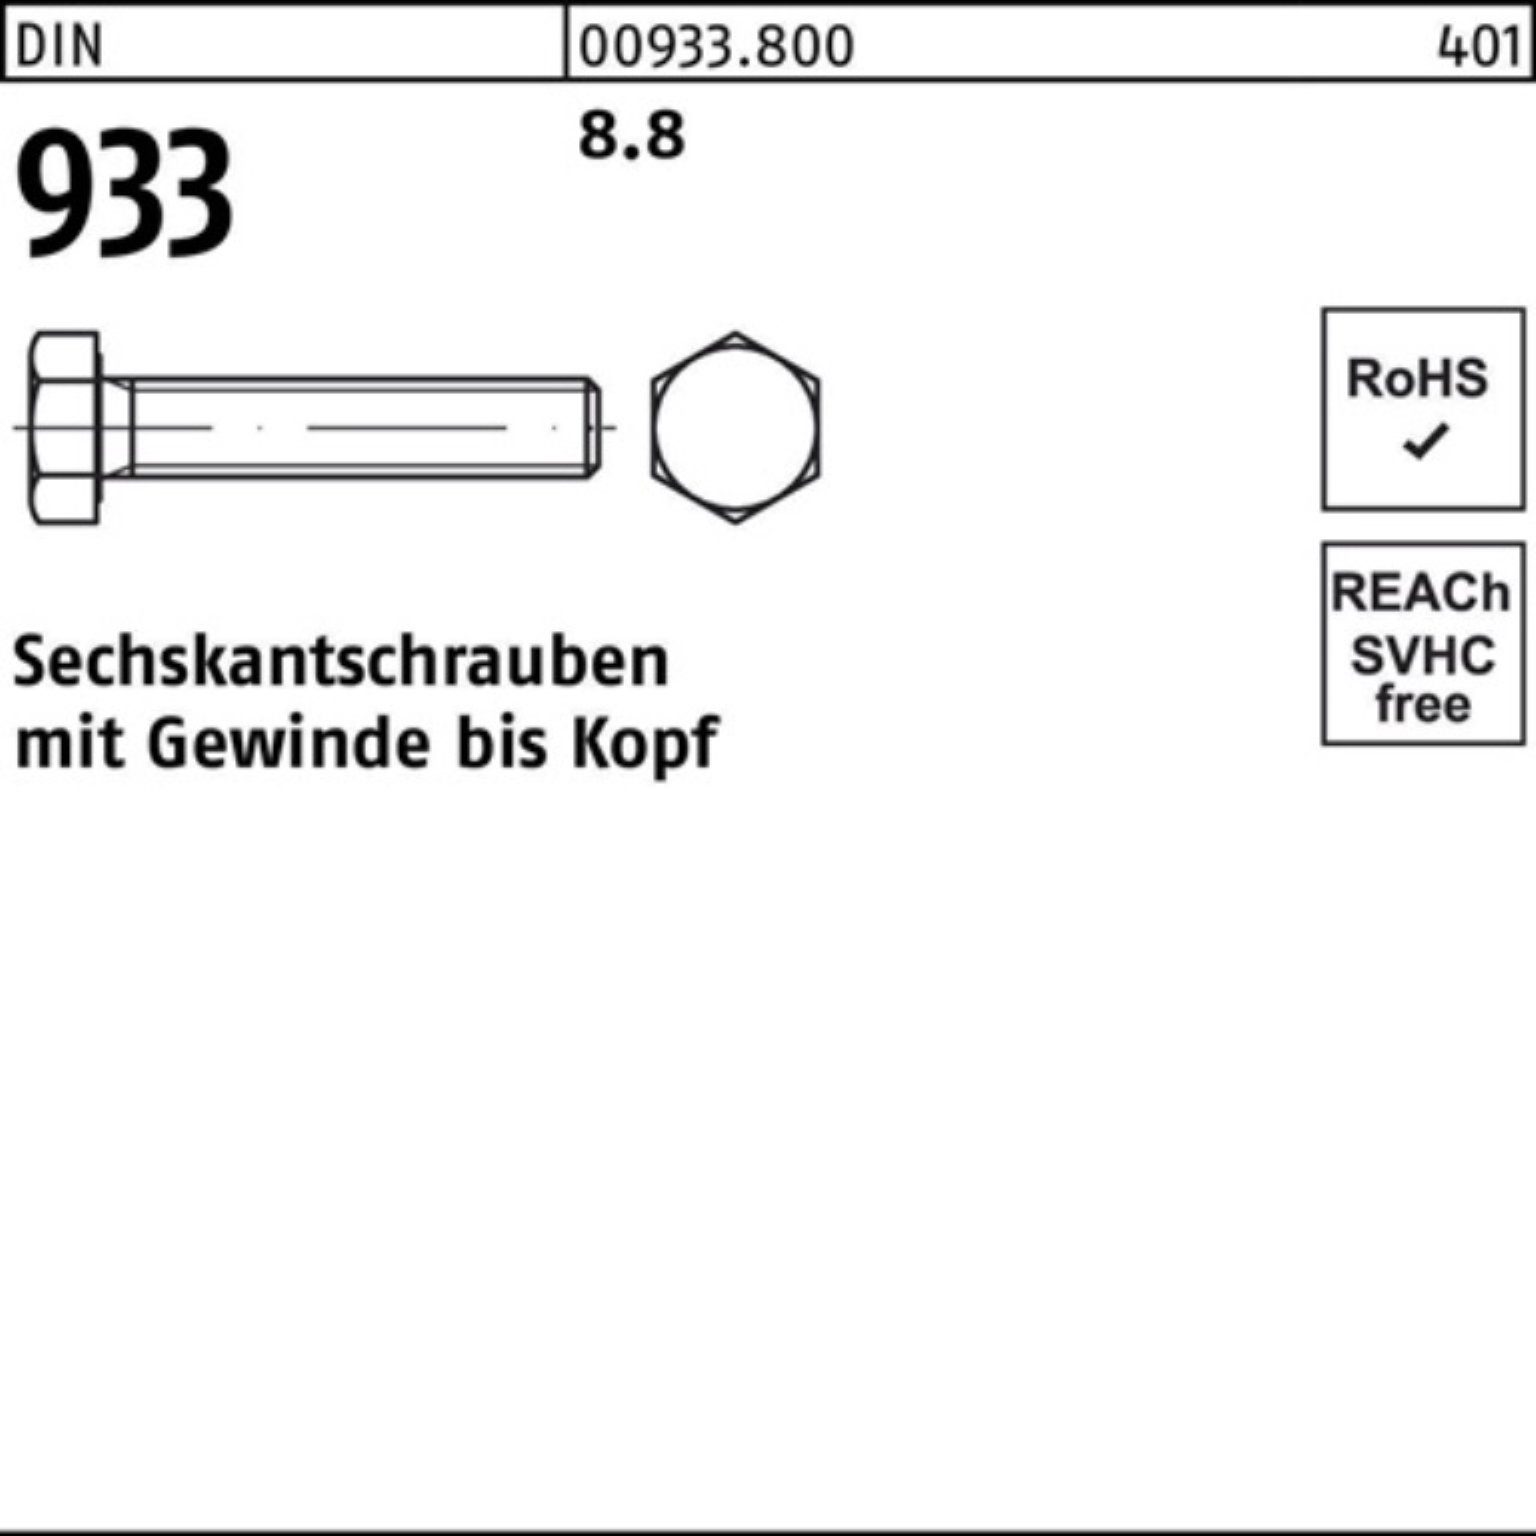 Reyher 100 Sechskantschraube Pack Sechskantschraube 8 VG 100er Stück 933 DIN 8.8 DIN M5x 8 933